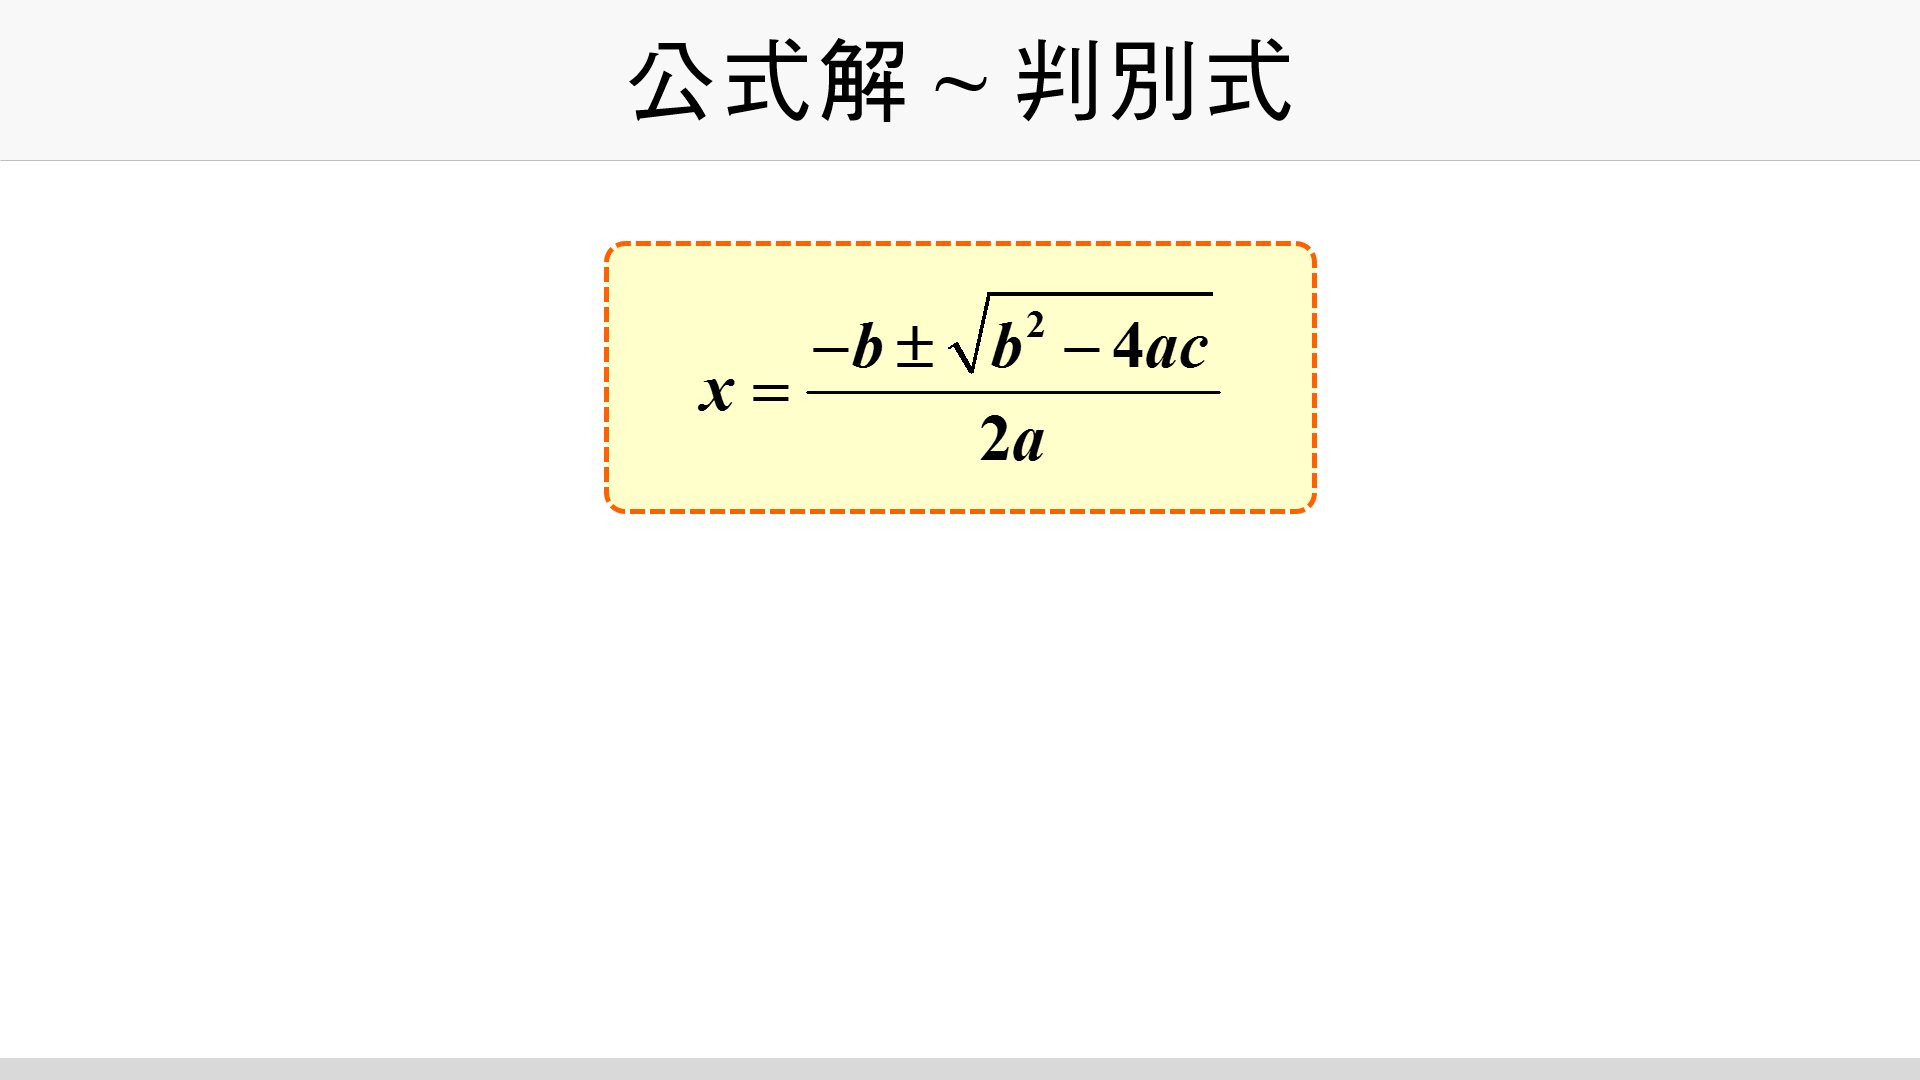 公式解 判別式 台灣數位學苑 K12 數學